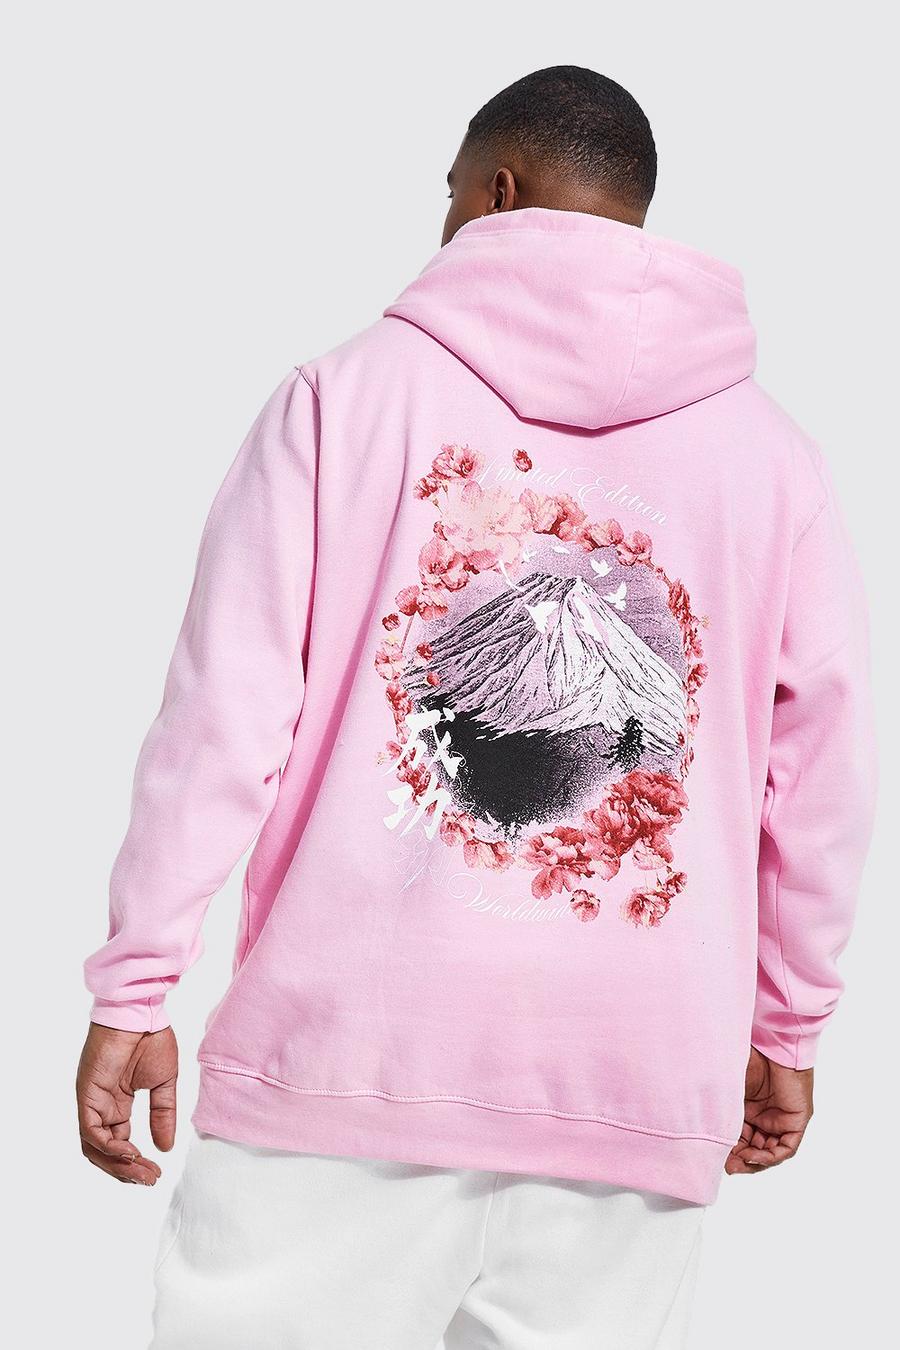 Sudadera Plus con capucha y estampado de flores de cerezo Fuji en la espalda, Light pink rosa